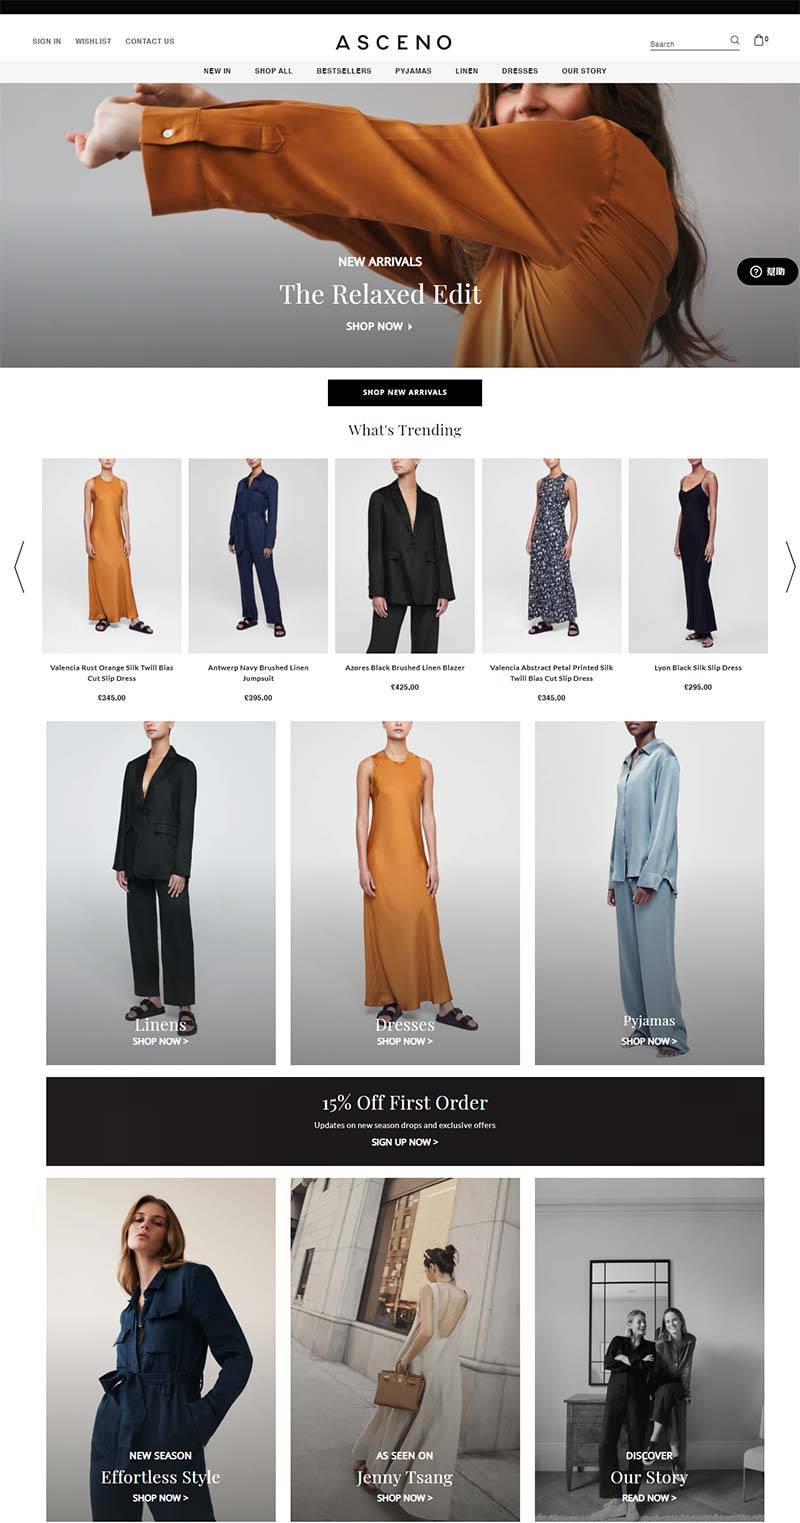 ASCENO 英国丝绸服饰品牌购物网站